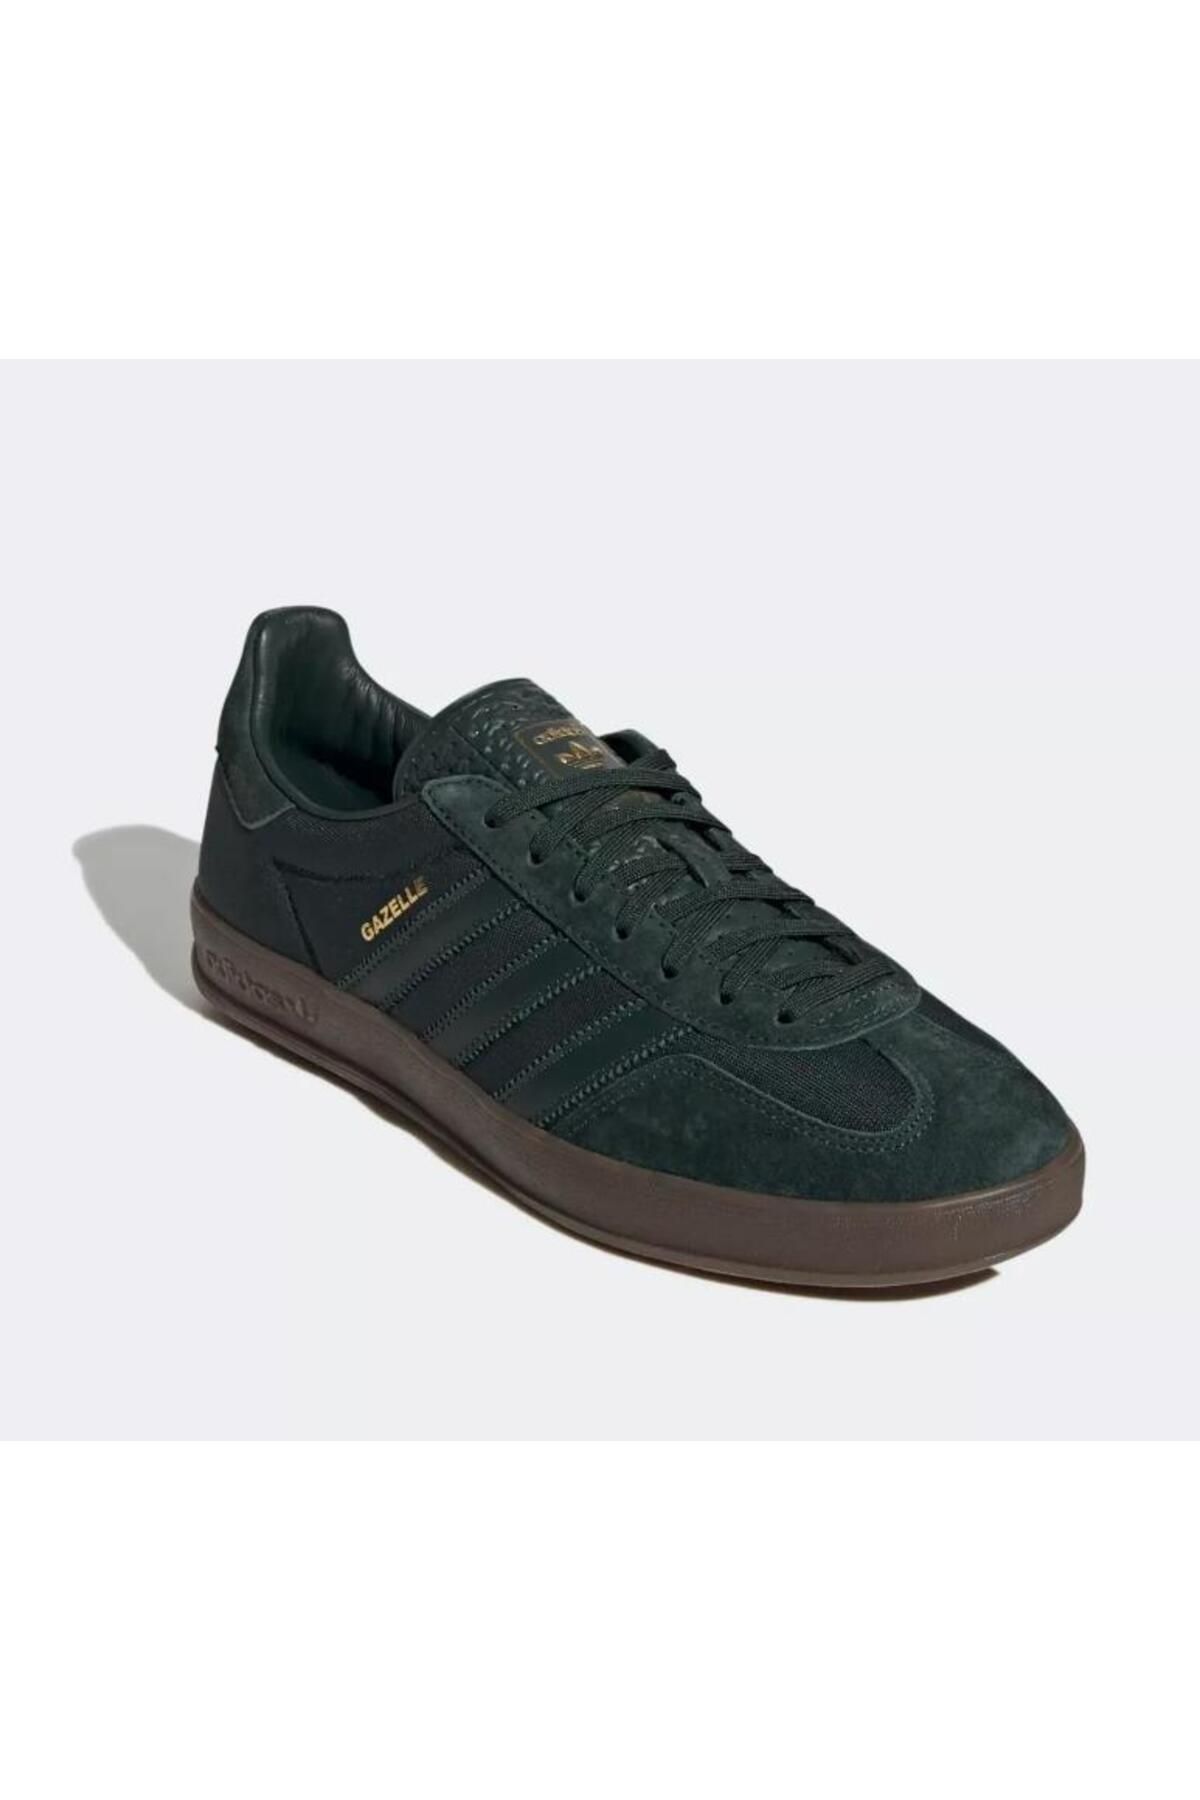 adidas Gazelle Erkek Haki Yeşil Spor Ayakkabısı H06272